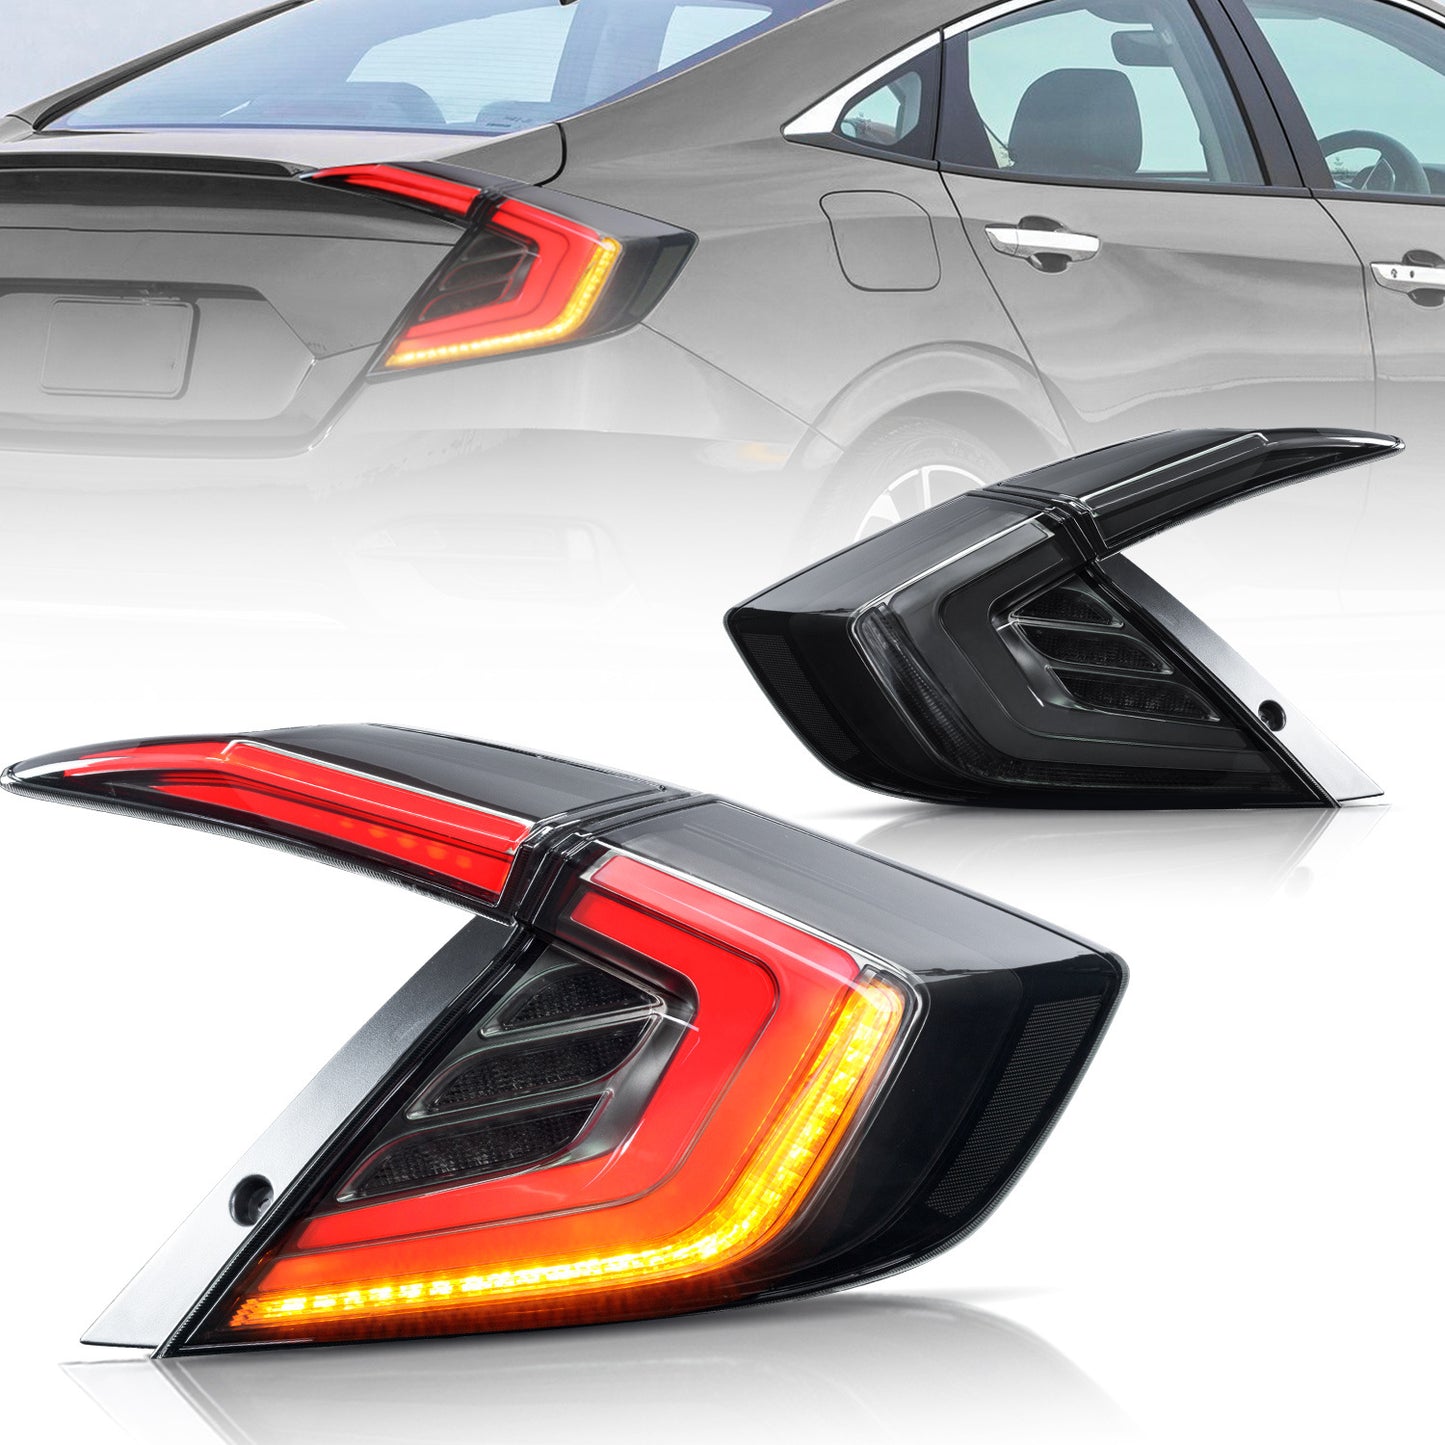 Full LED Tail Lights Assembly For 10th Gen Honda Civic Sedan 2016-2021